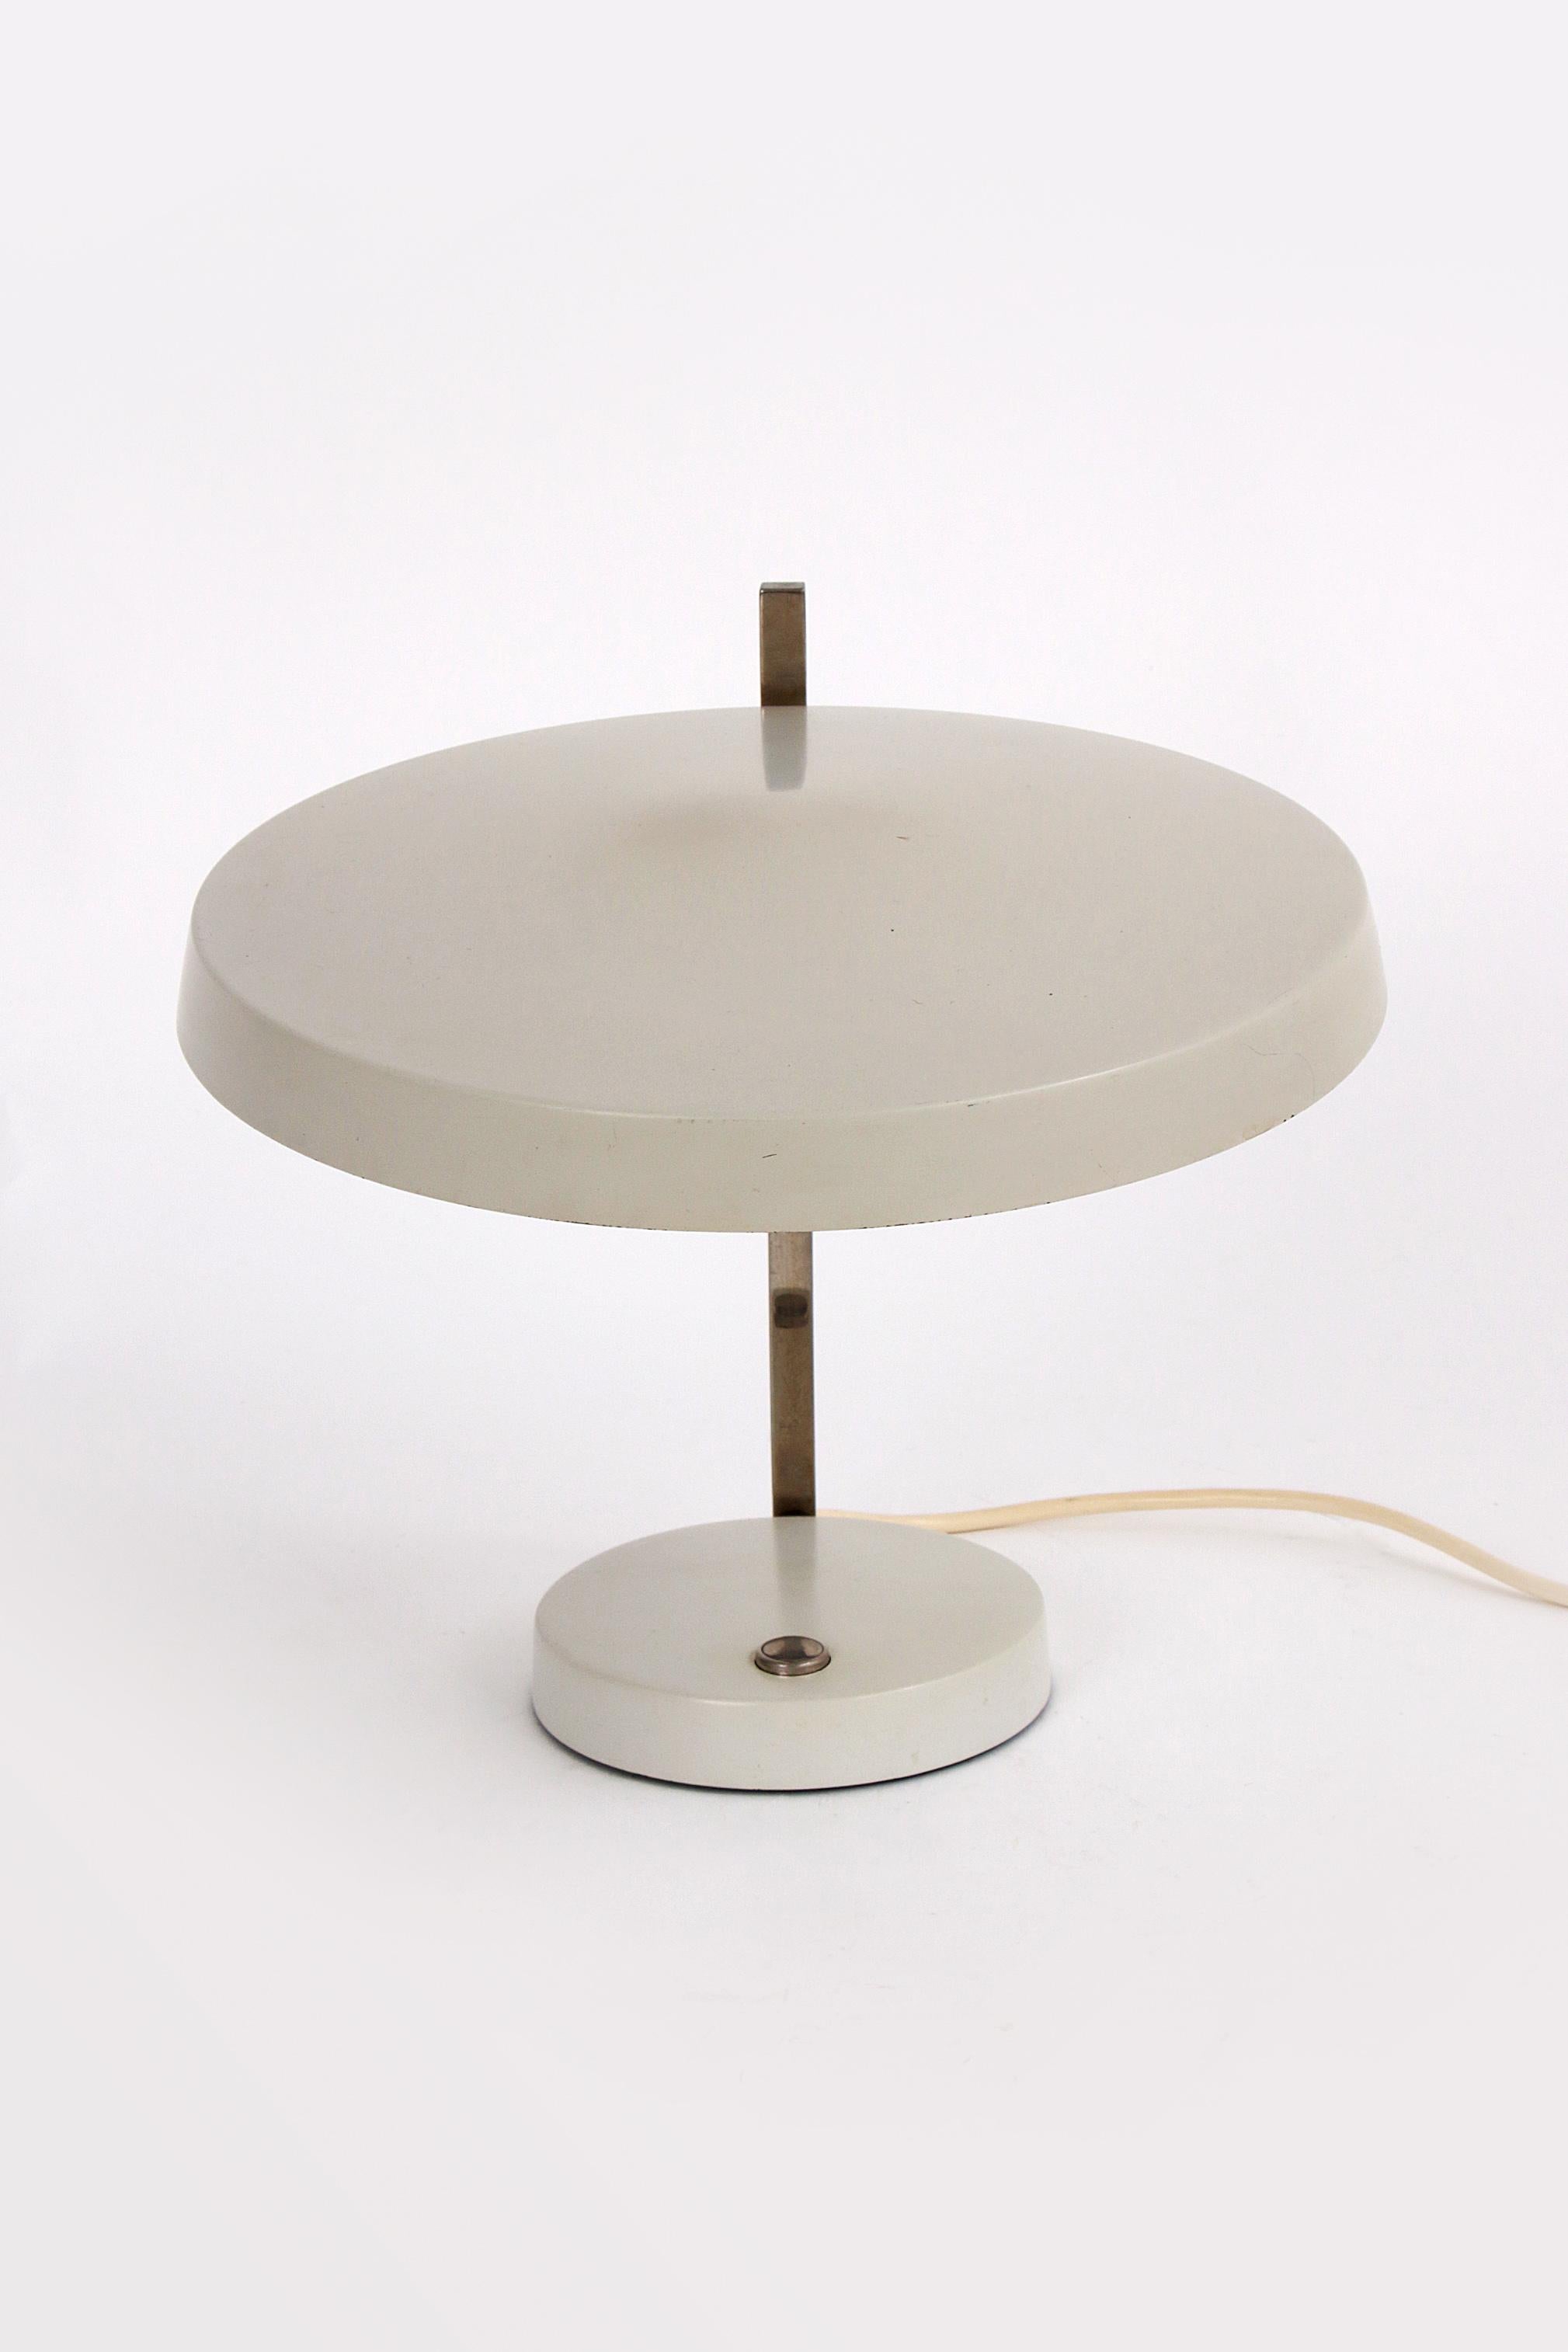 Mid-20th Century Hillebrand leuchten, desk lamp Oslo designed by Heinz Pfaender 1960.